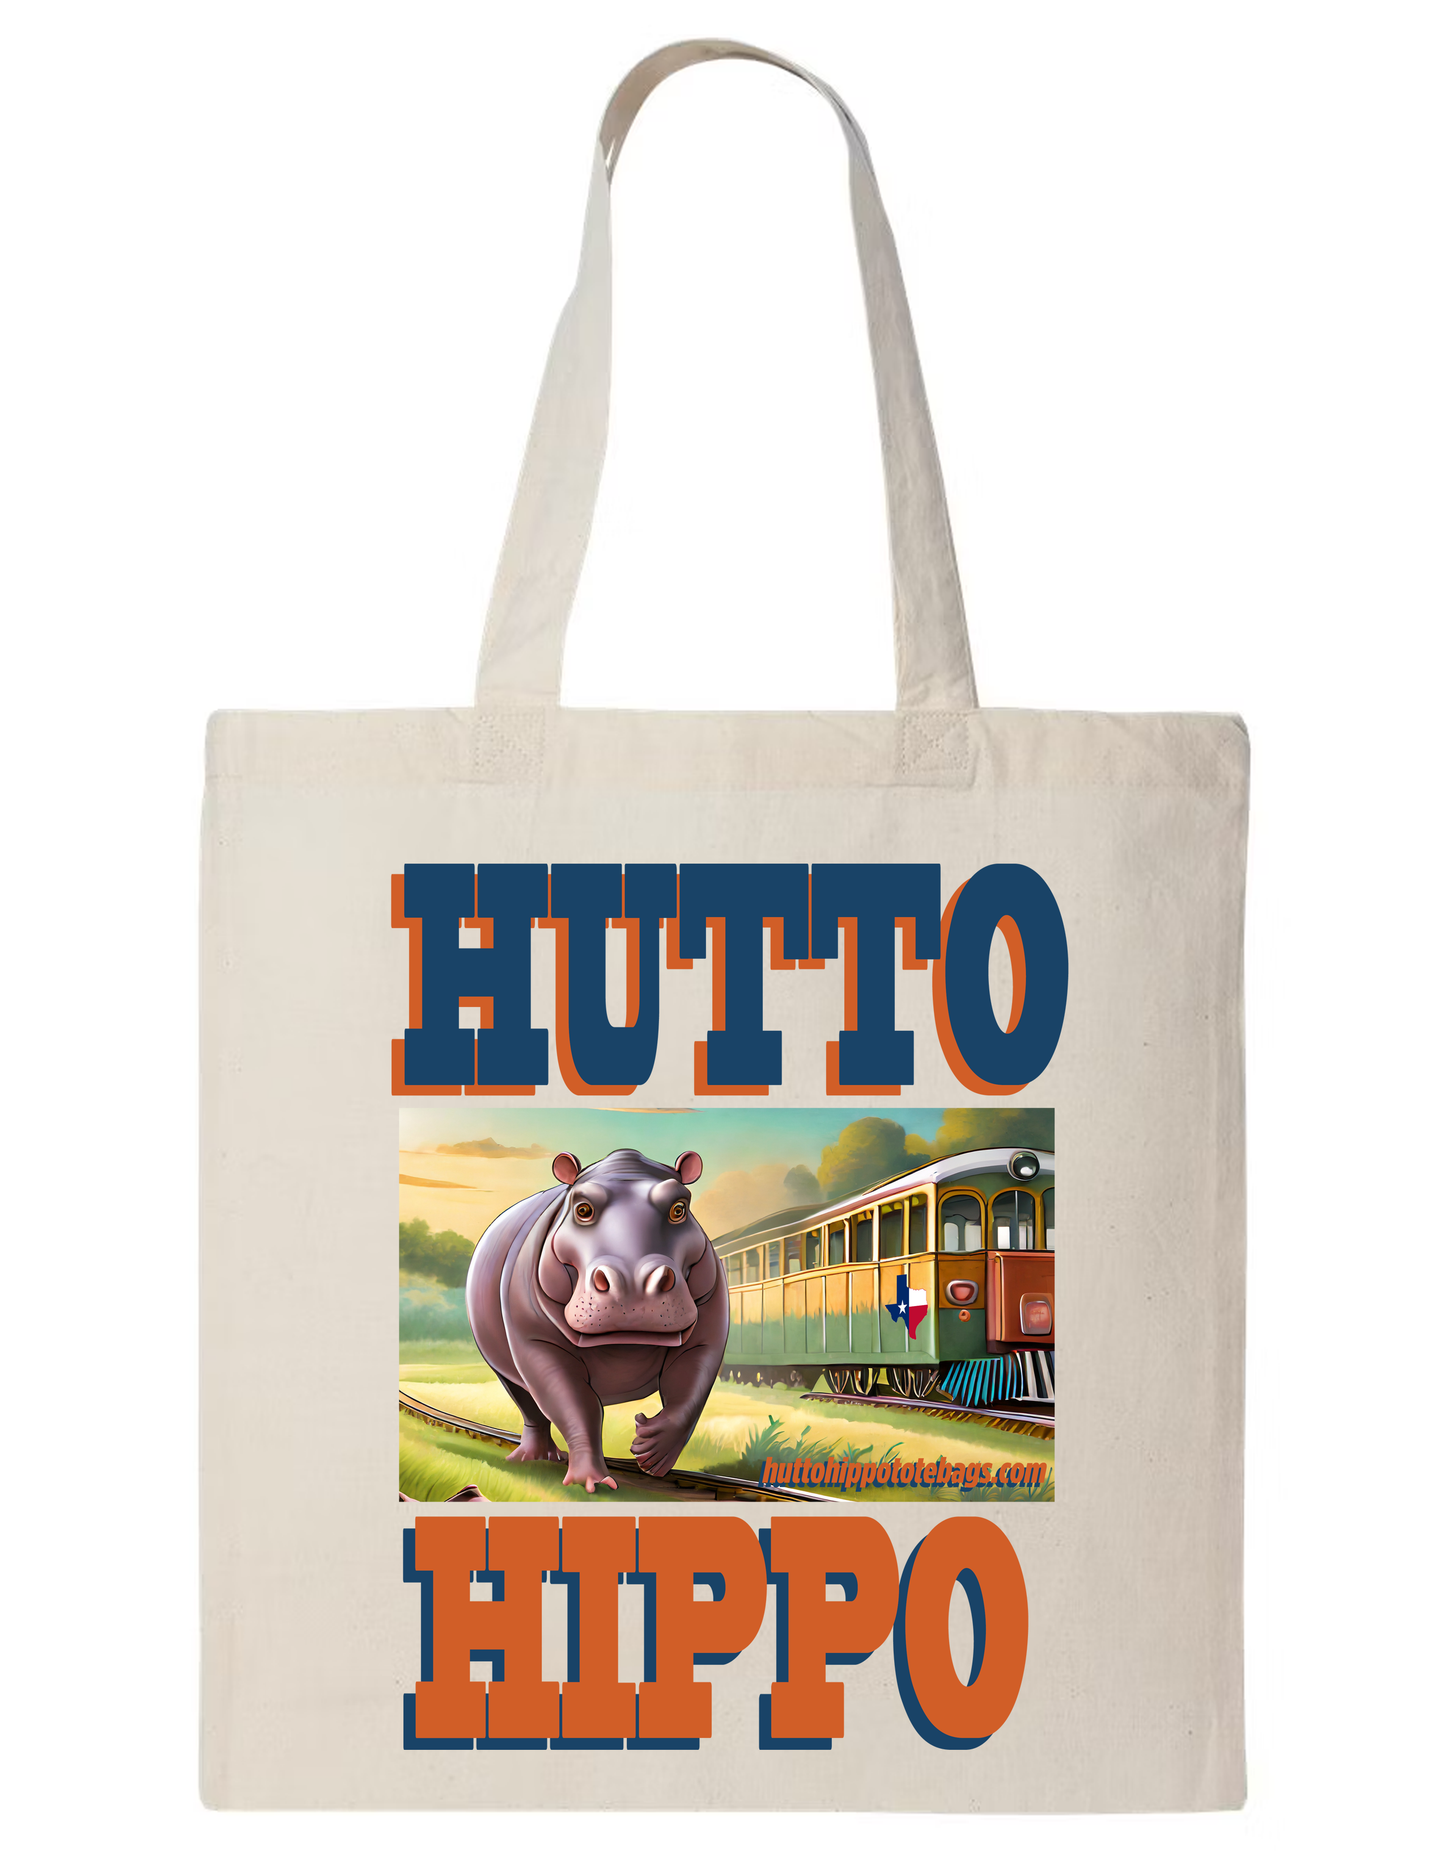 Hutto Hippo